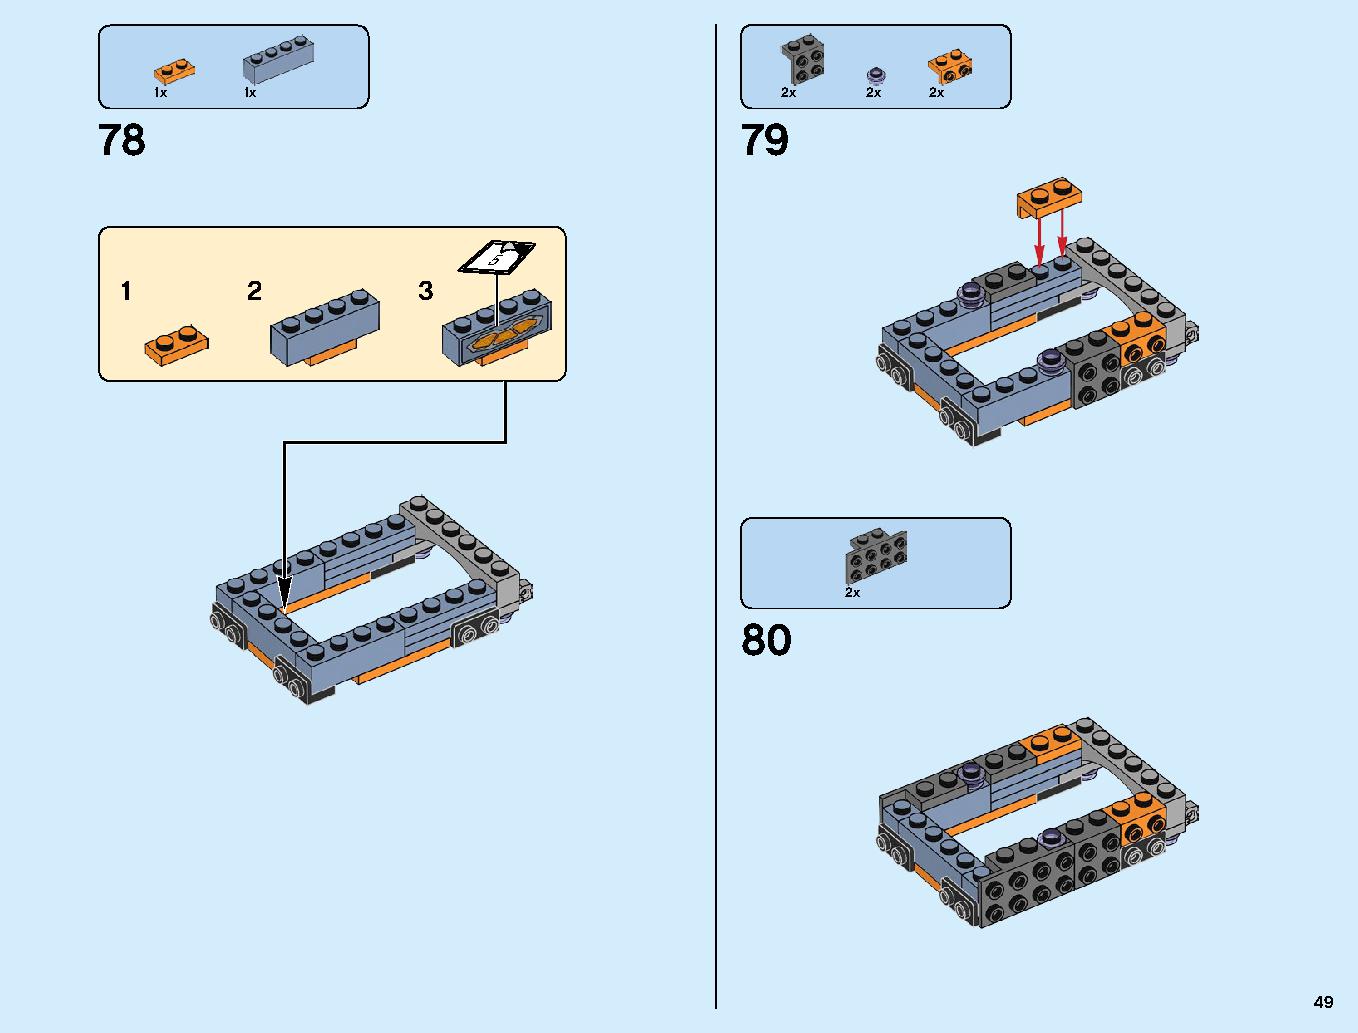 어벤져스 타노스: 최후의 전투 76107 레고 세트 제품정보 레고 조립설명서 49 page